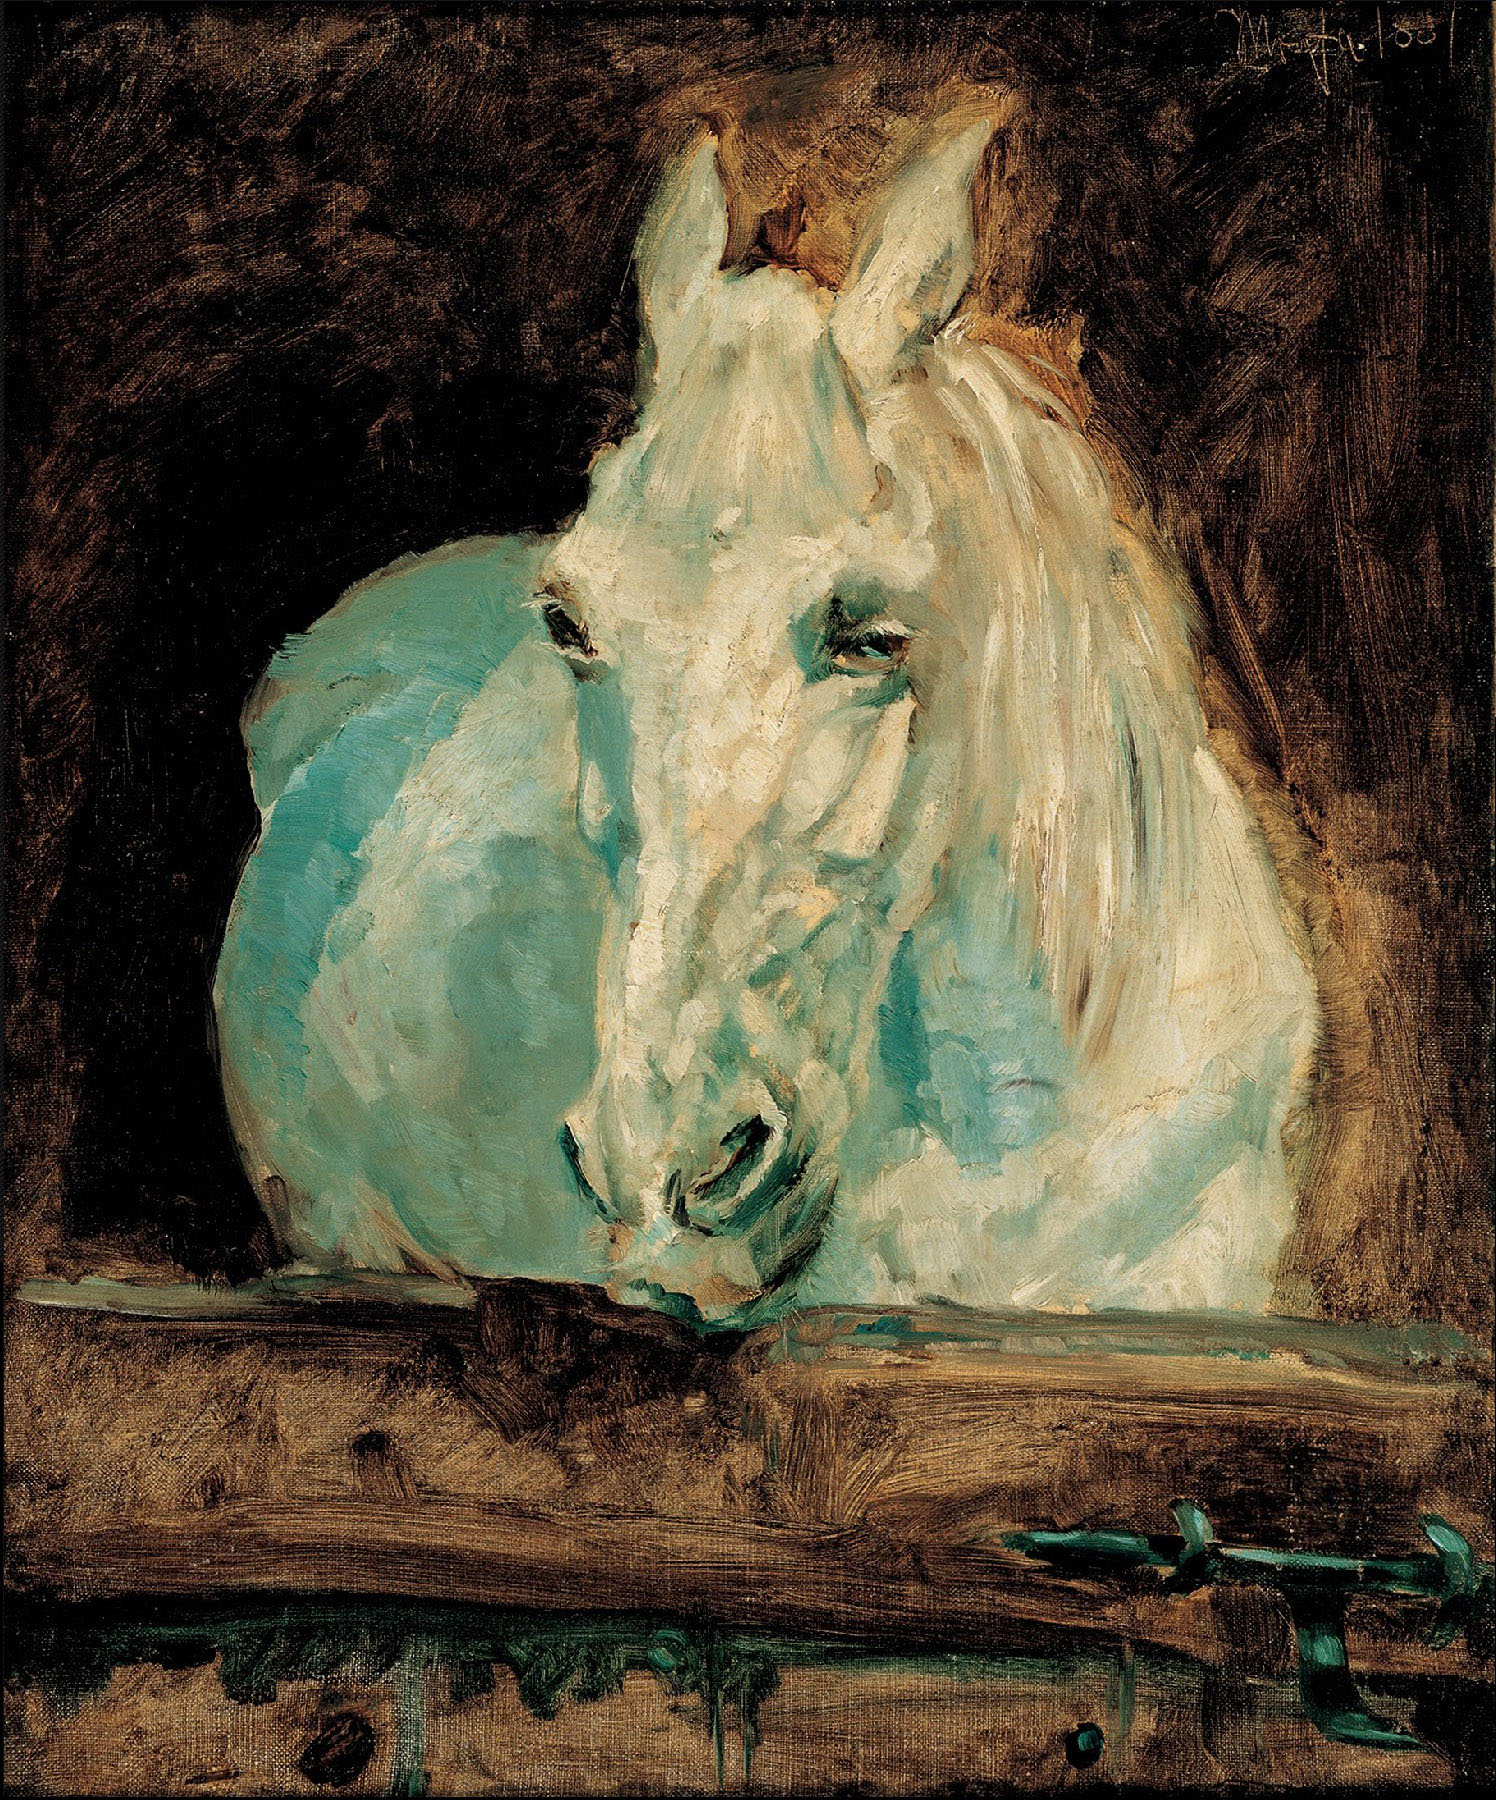 Анри де Тулуз-Лотрек. "Белая лошадь Газель". 1881. Галерея Альбертина, Вена.